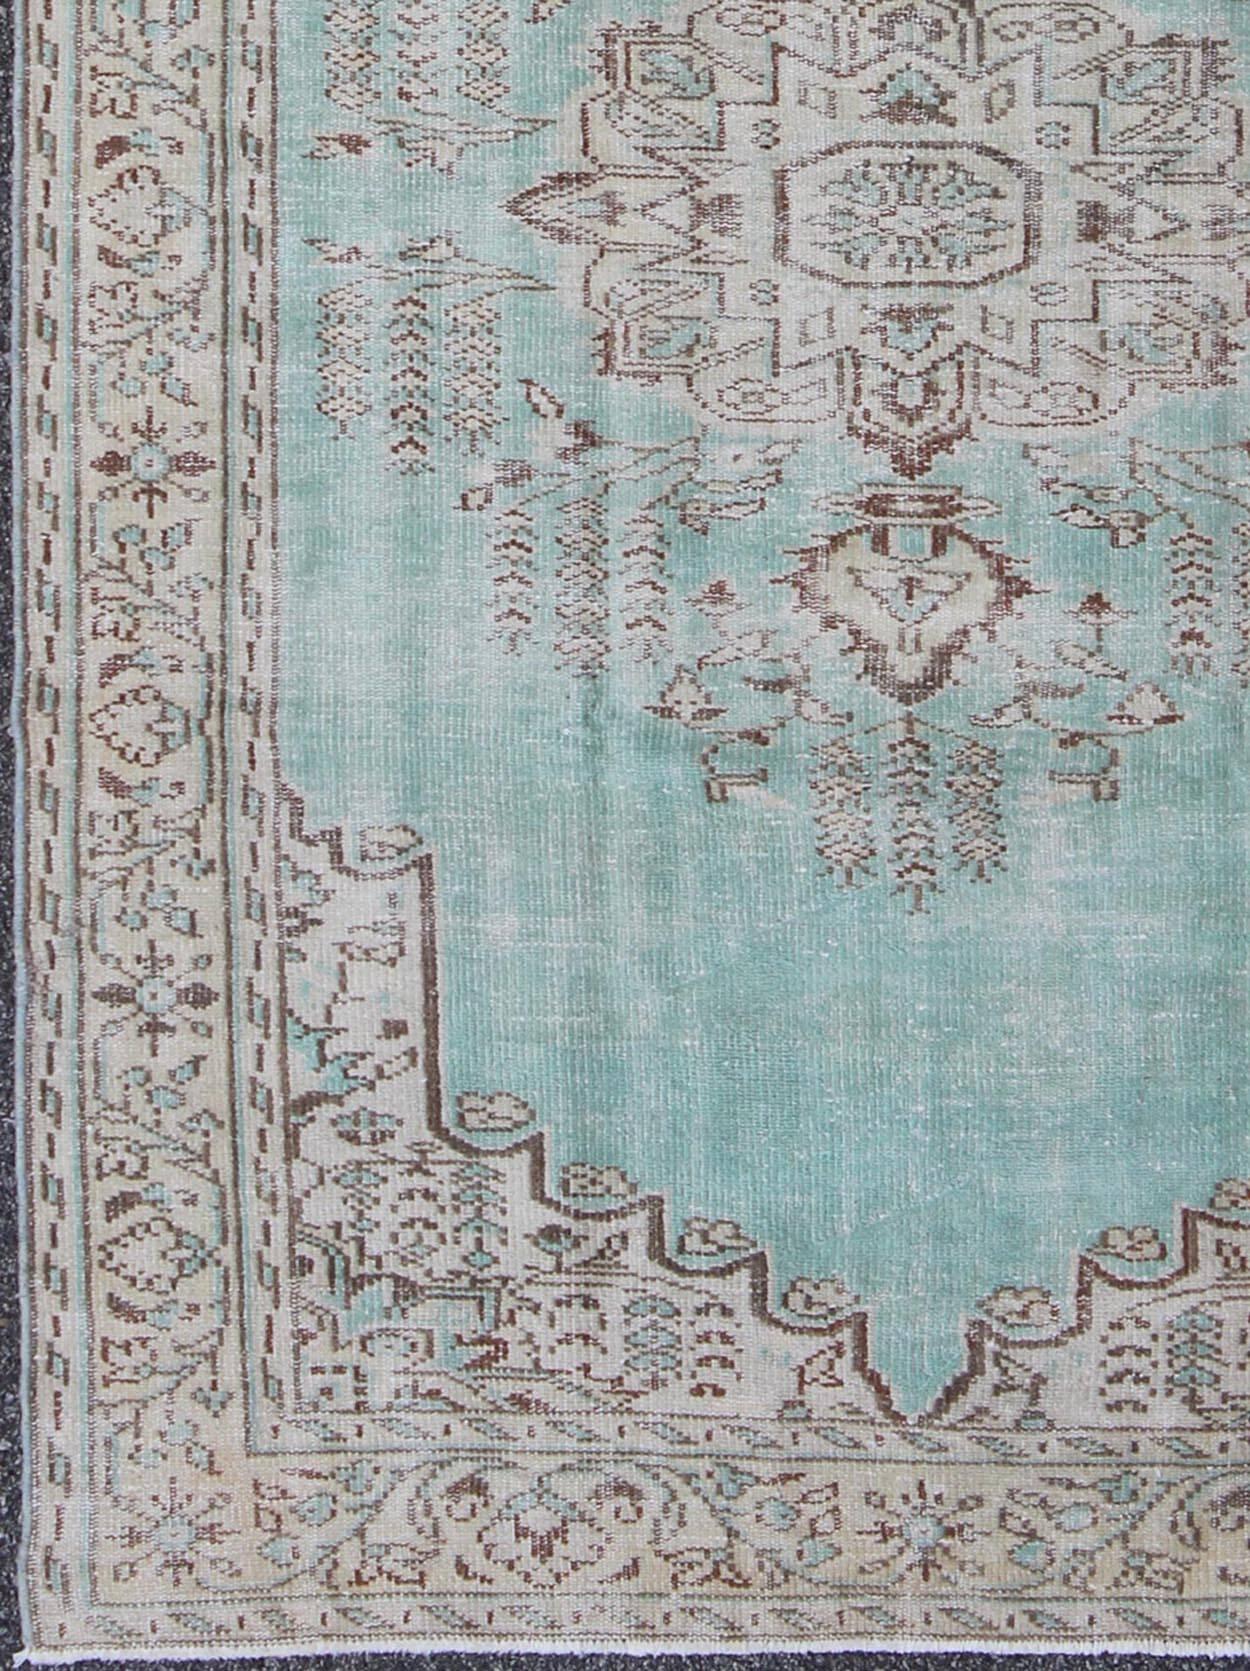 Tapis Oushak vintage avec un fond de couleur aqua et des reflets bruns.
Ce tapis turc Oushak présente un bleu aqua unique comme couleur de fond principale. Les autres couleurs sont le brun et le taupe clair. Le design audacieux et géométrique de ce